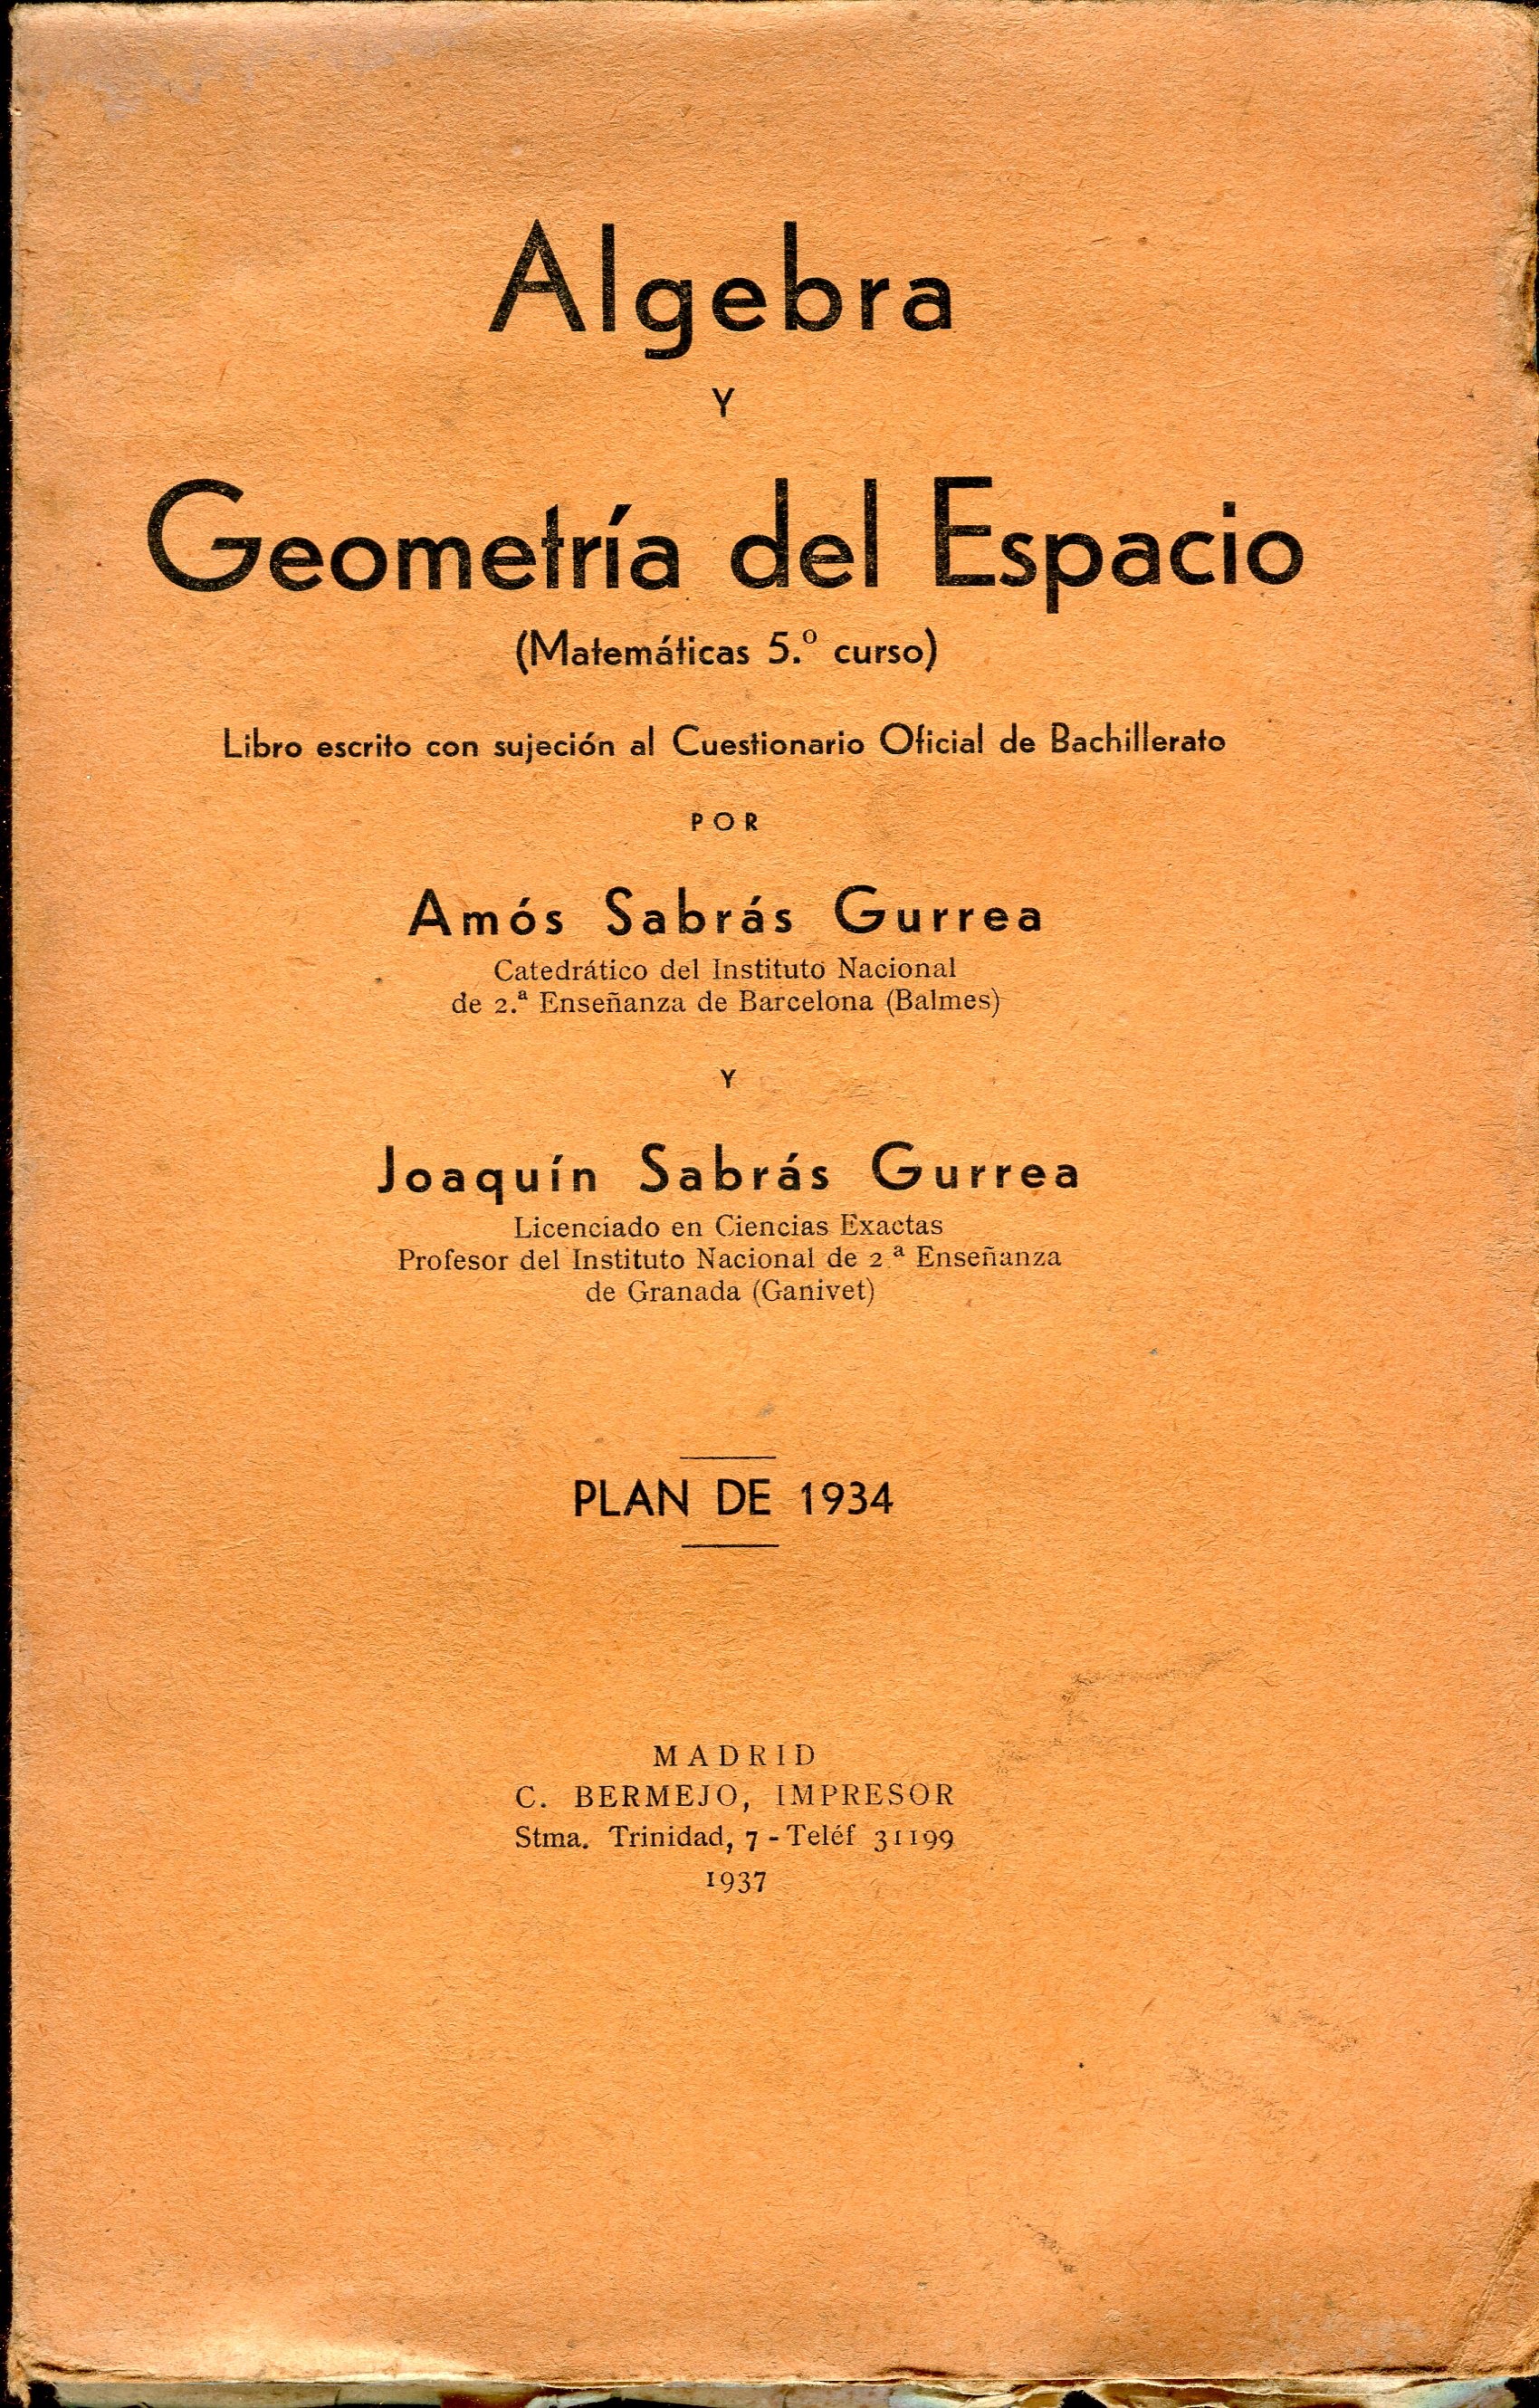 Algebra y Geometría del Espacio Matemáticas 5º por Amós Sabrás Gurrea. - Orbis Antique Prints